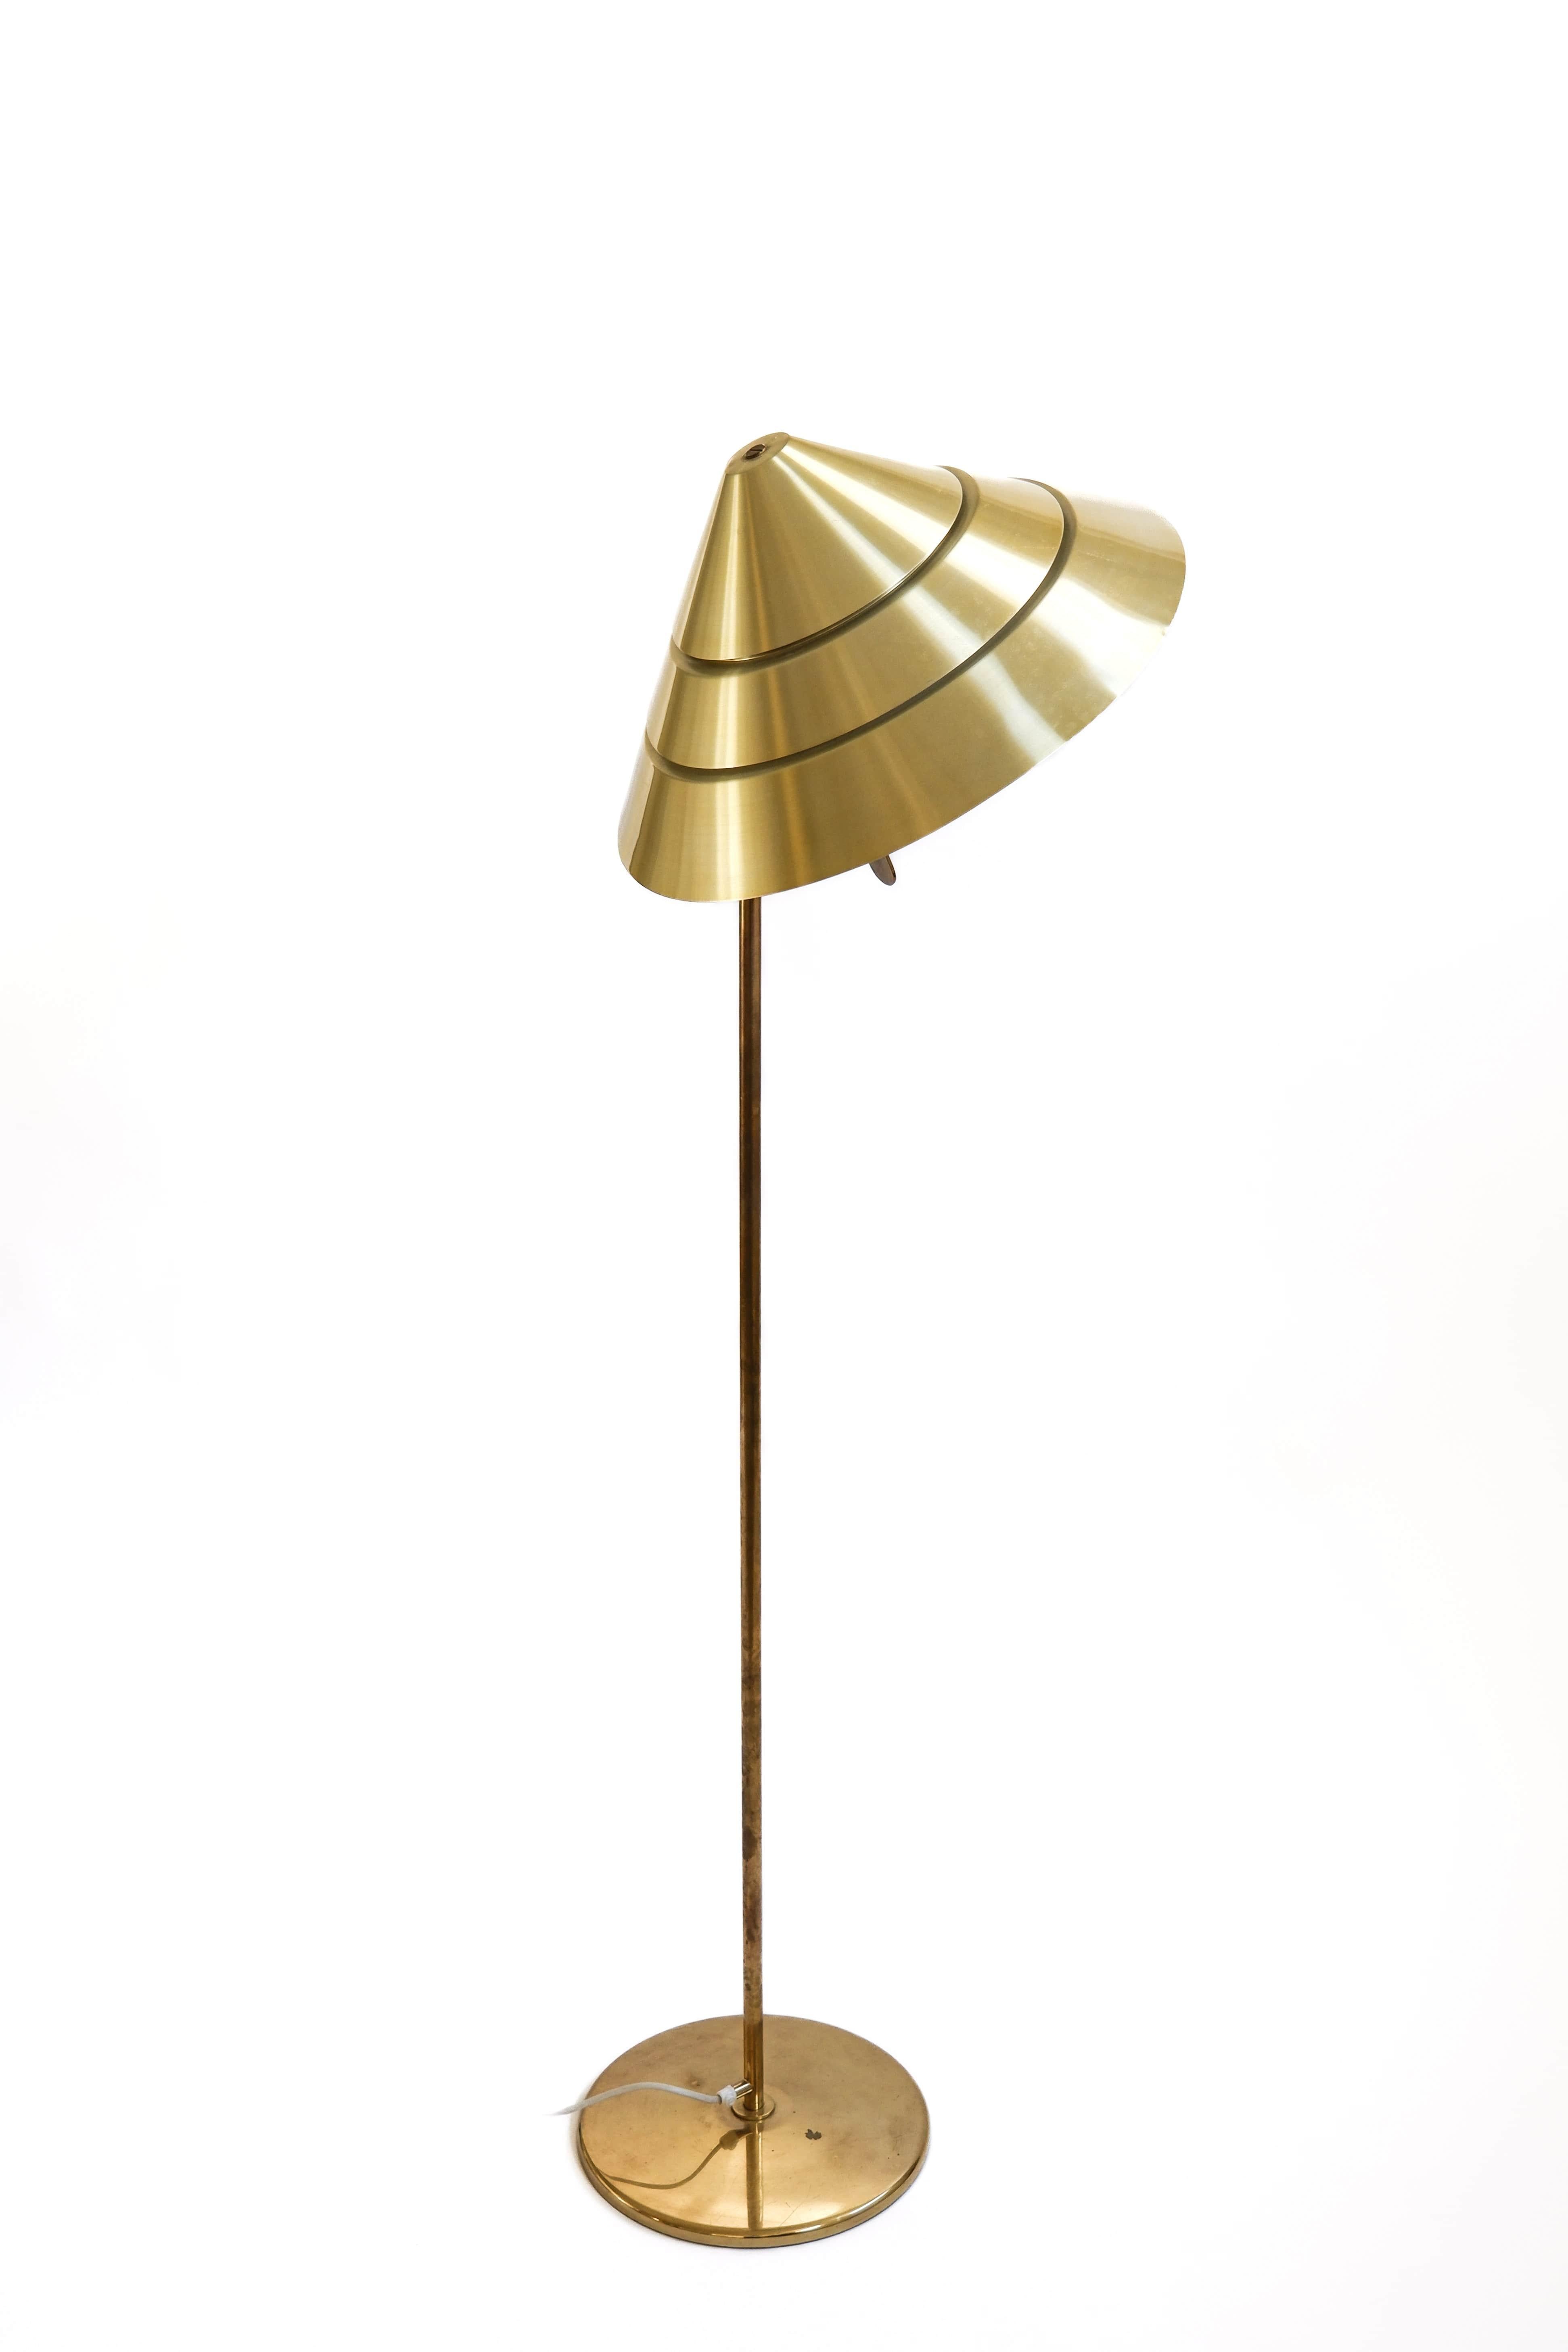 Lampadaire extrêmement rare conçu par Hans Agnes Jakobsson et produit à Markaryd dans les années 70. Ce lampadaire est le modèle Tropicana, G222, produit en petite quantité. La lampe est fabriquée en laiton massif. Il dispose d'un abat-jour qui